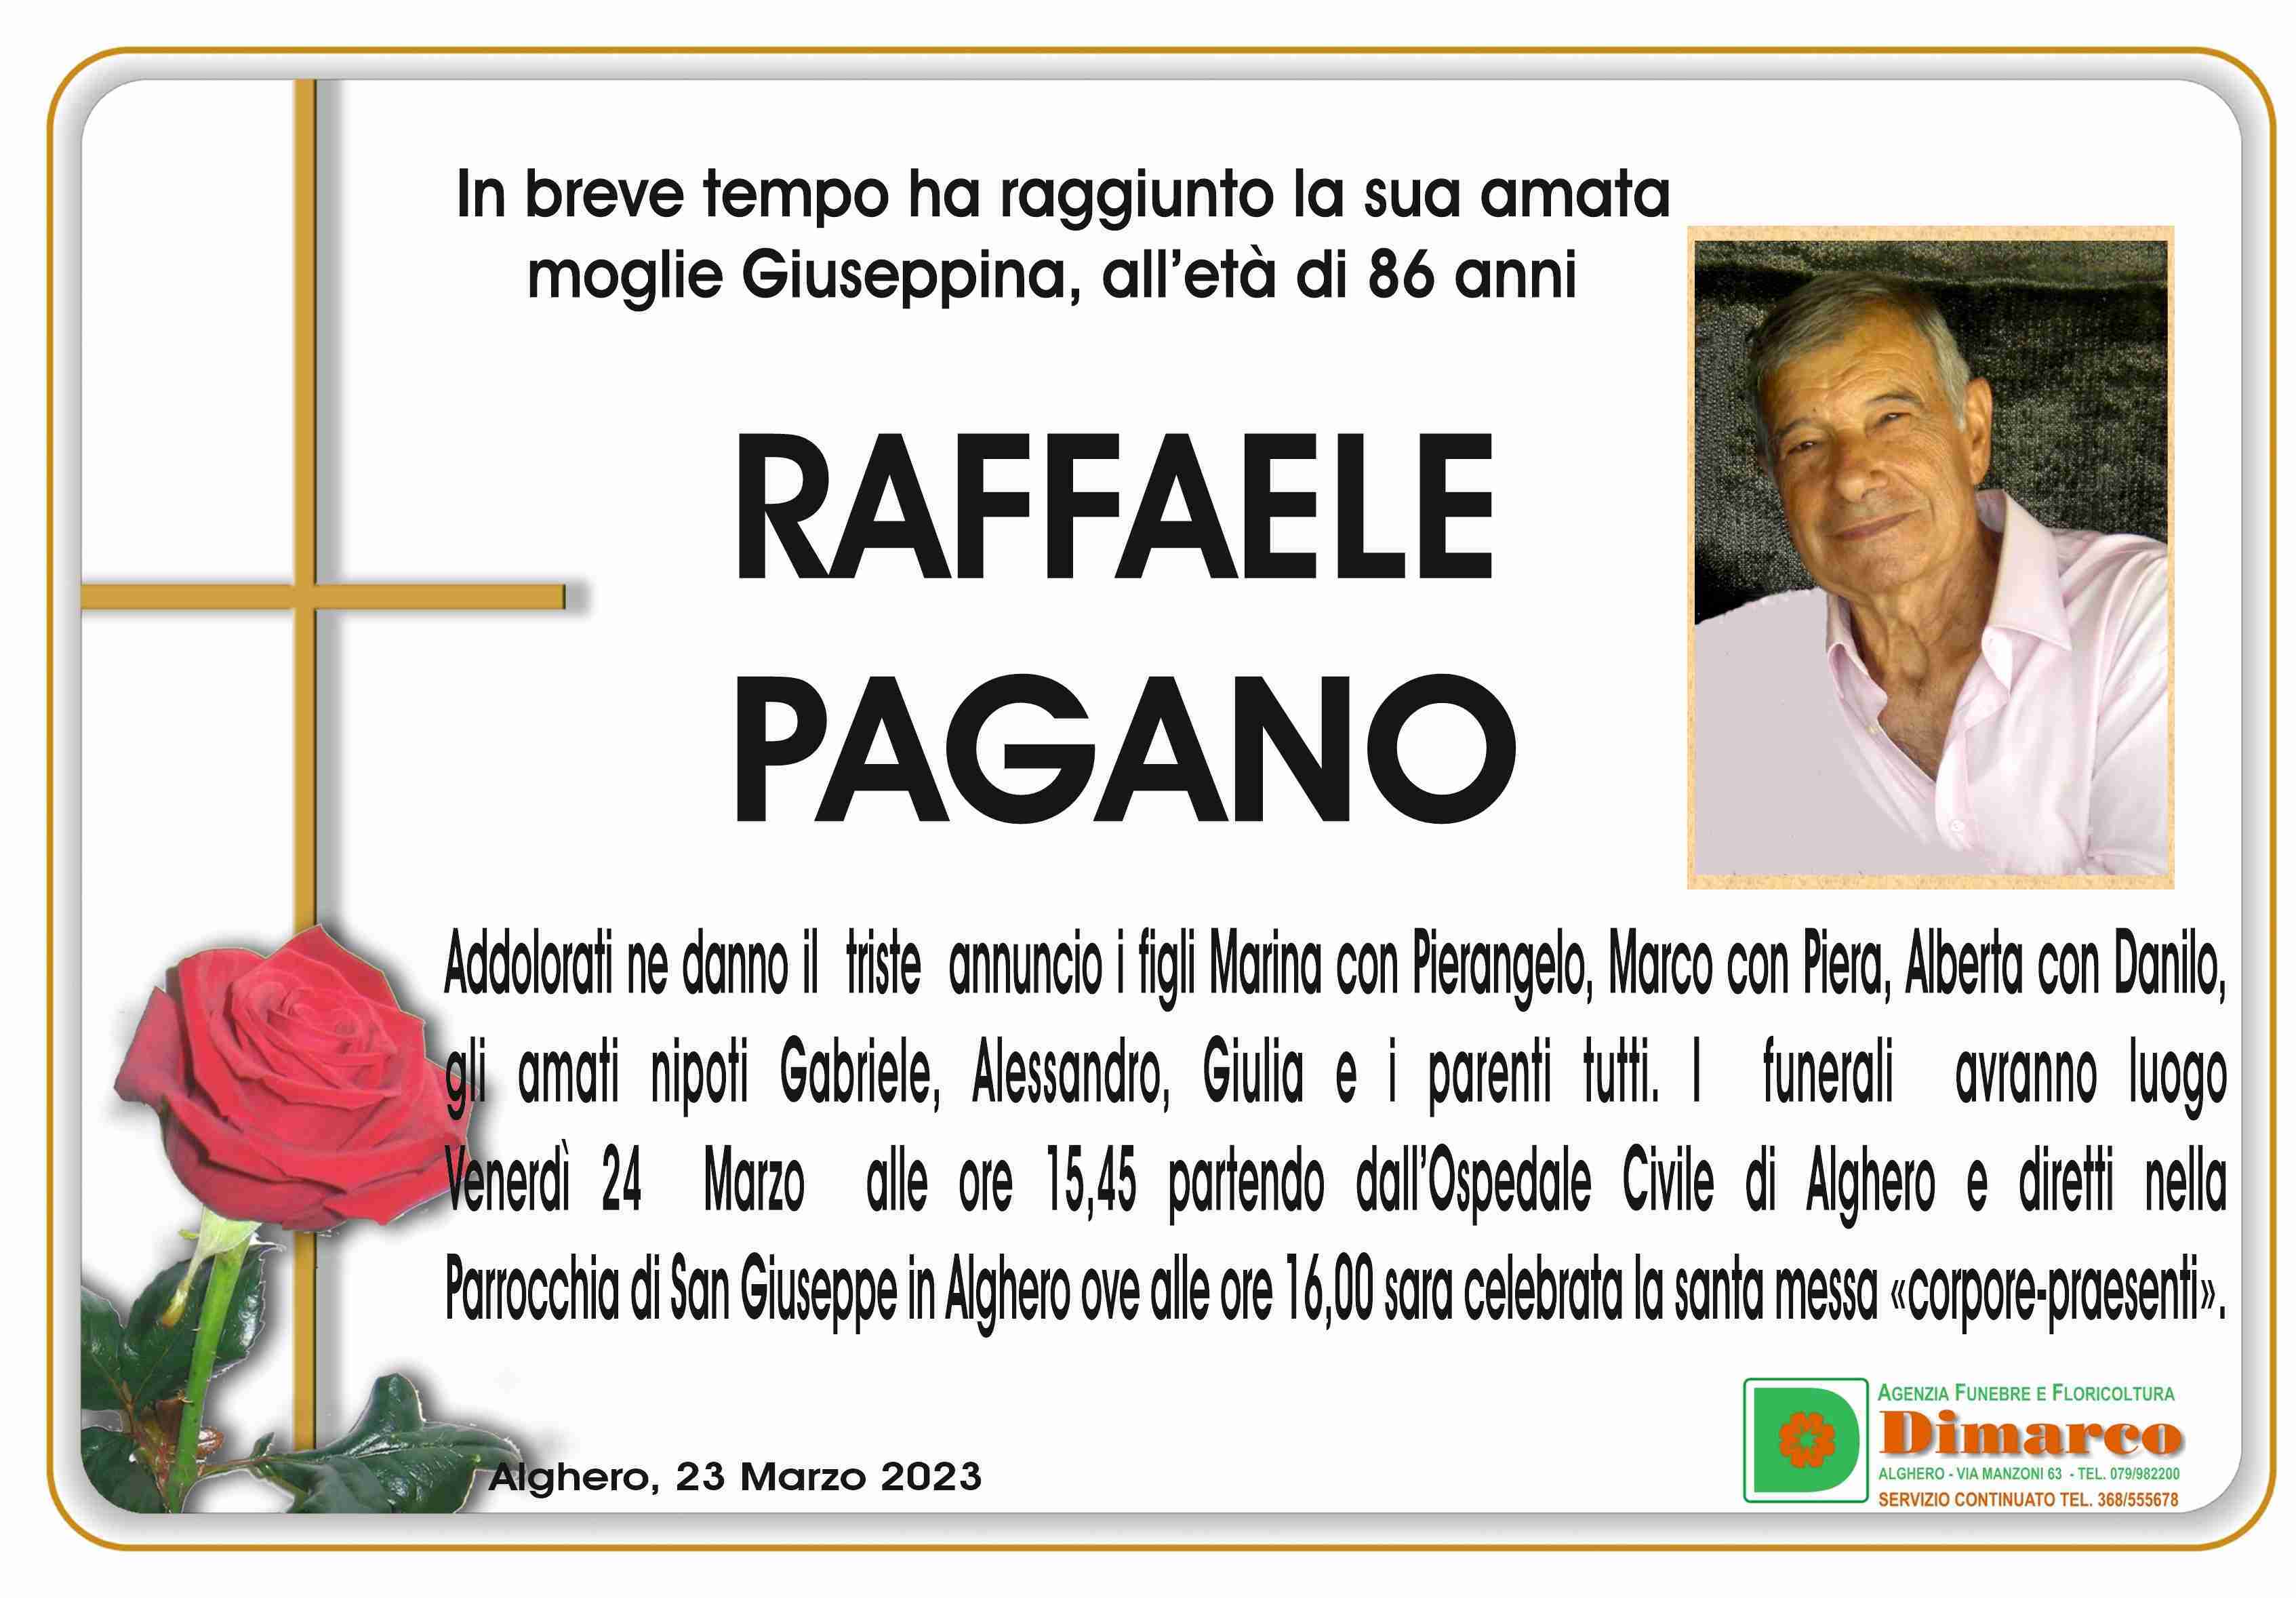 Raffaele Pagano